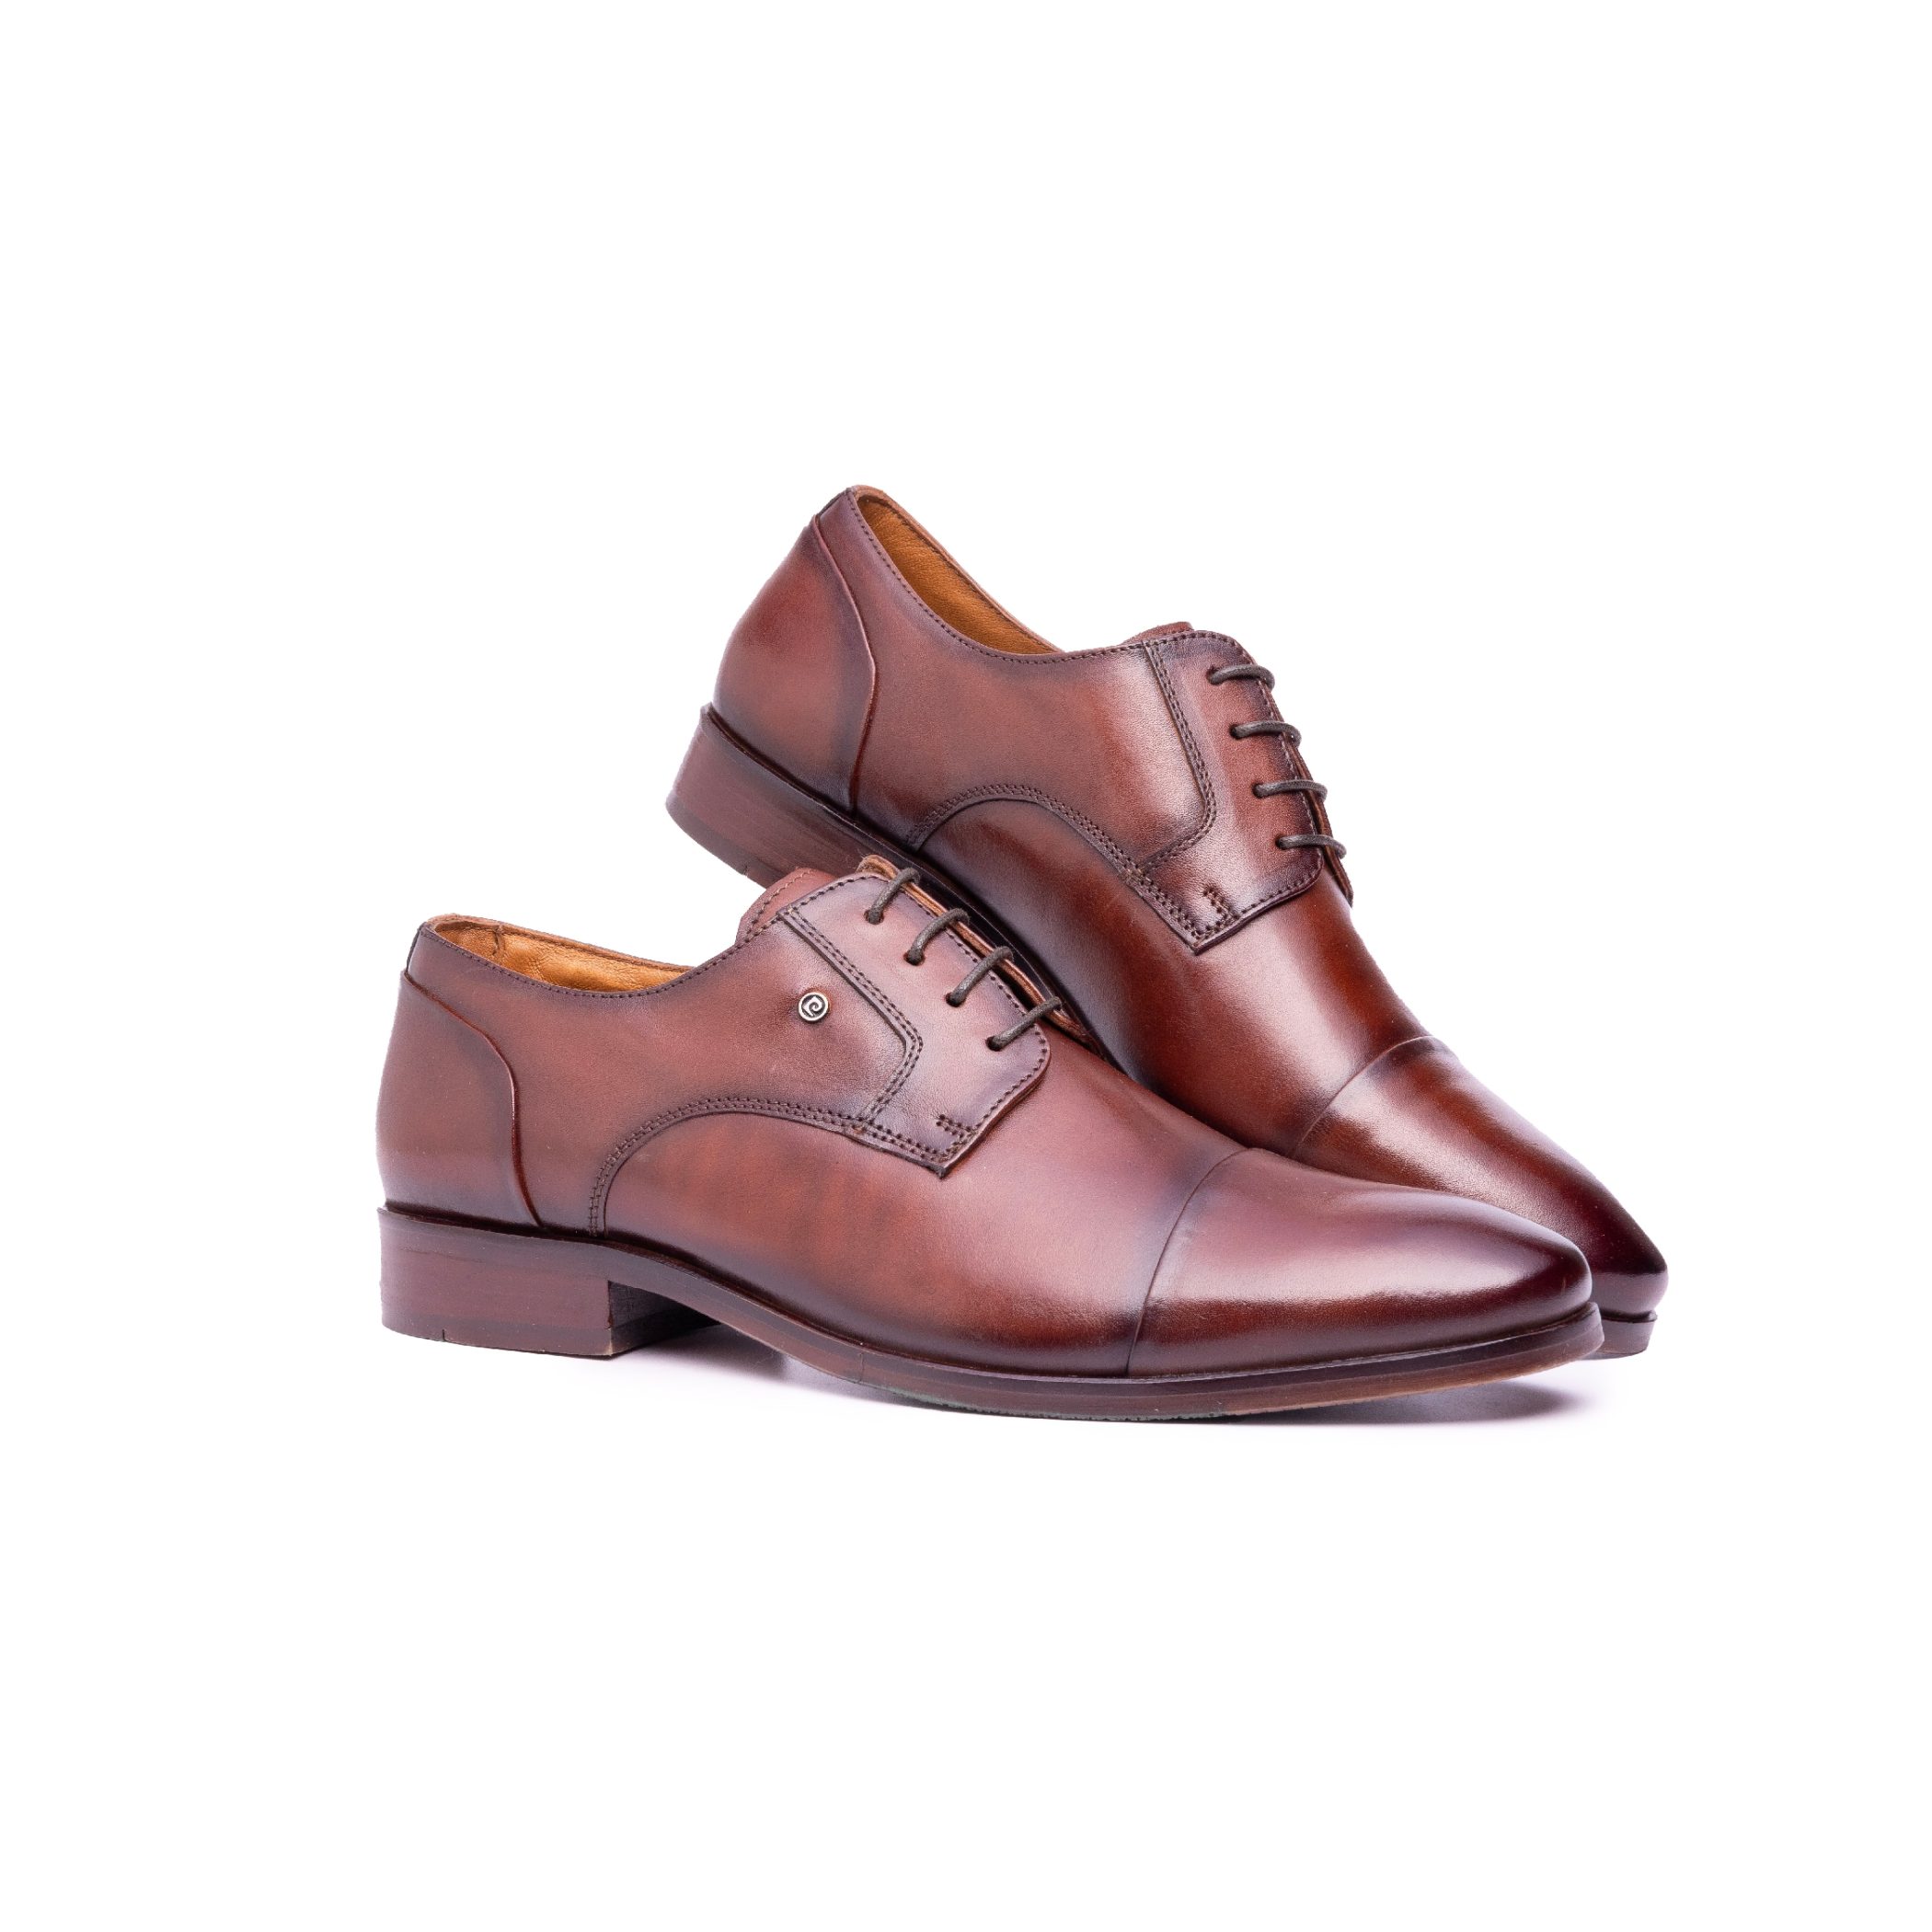 Formal Shoes for men 2